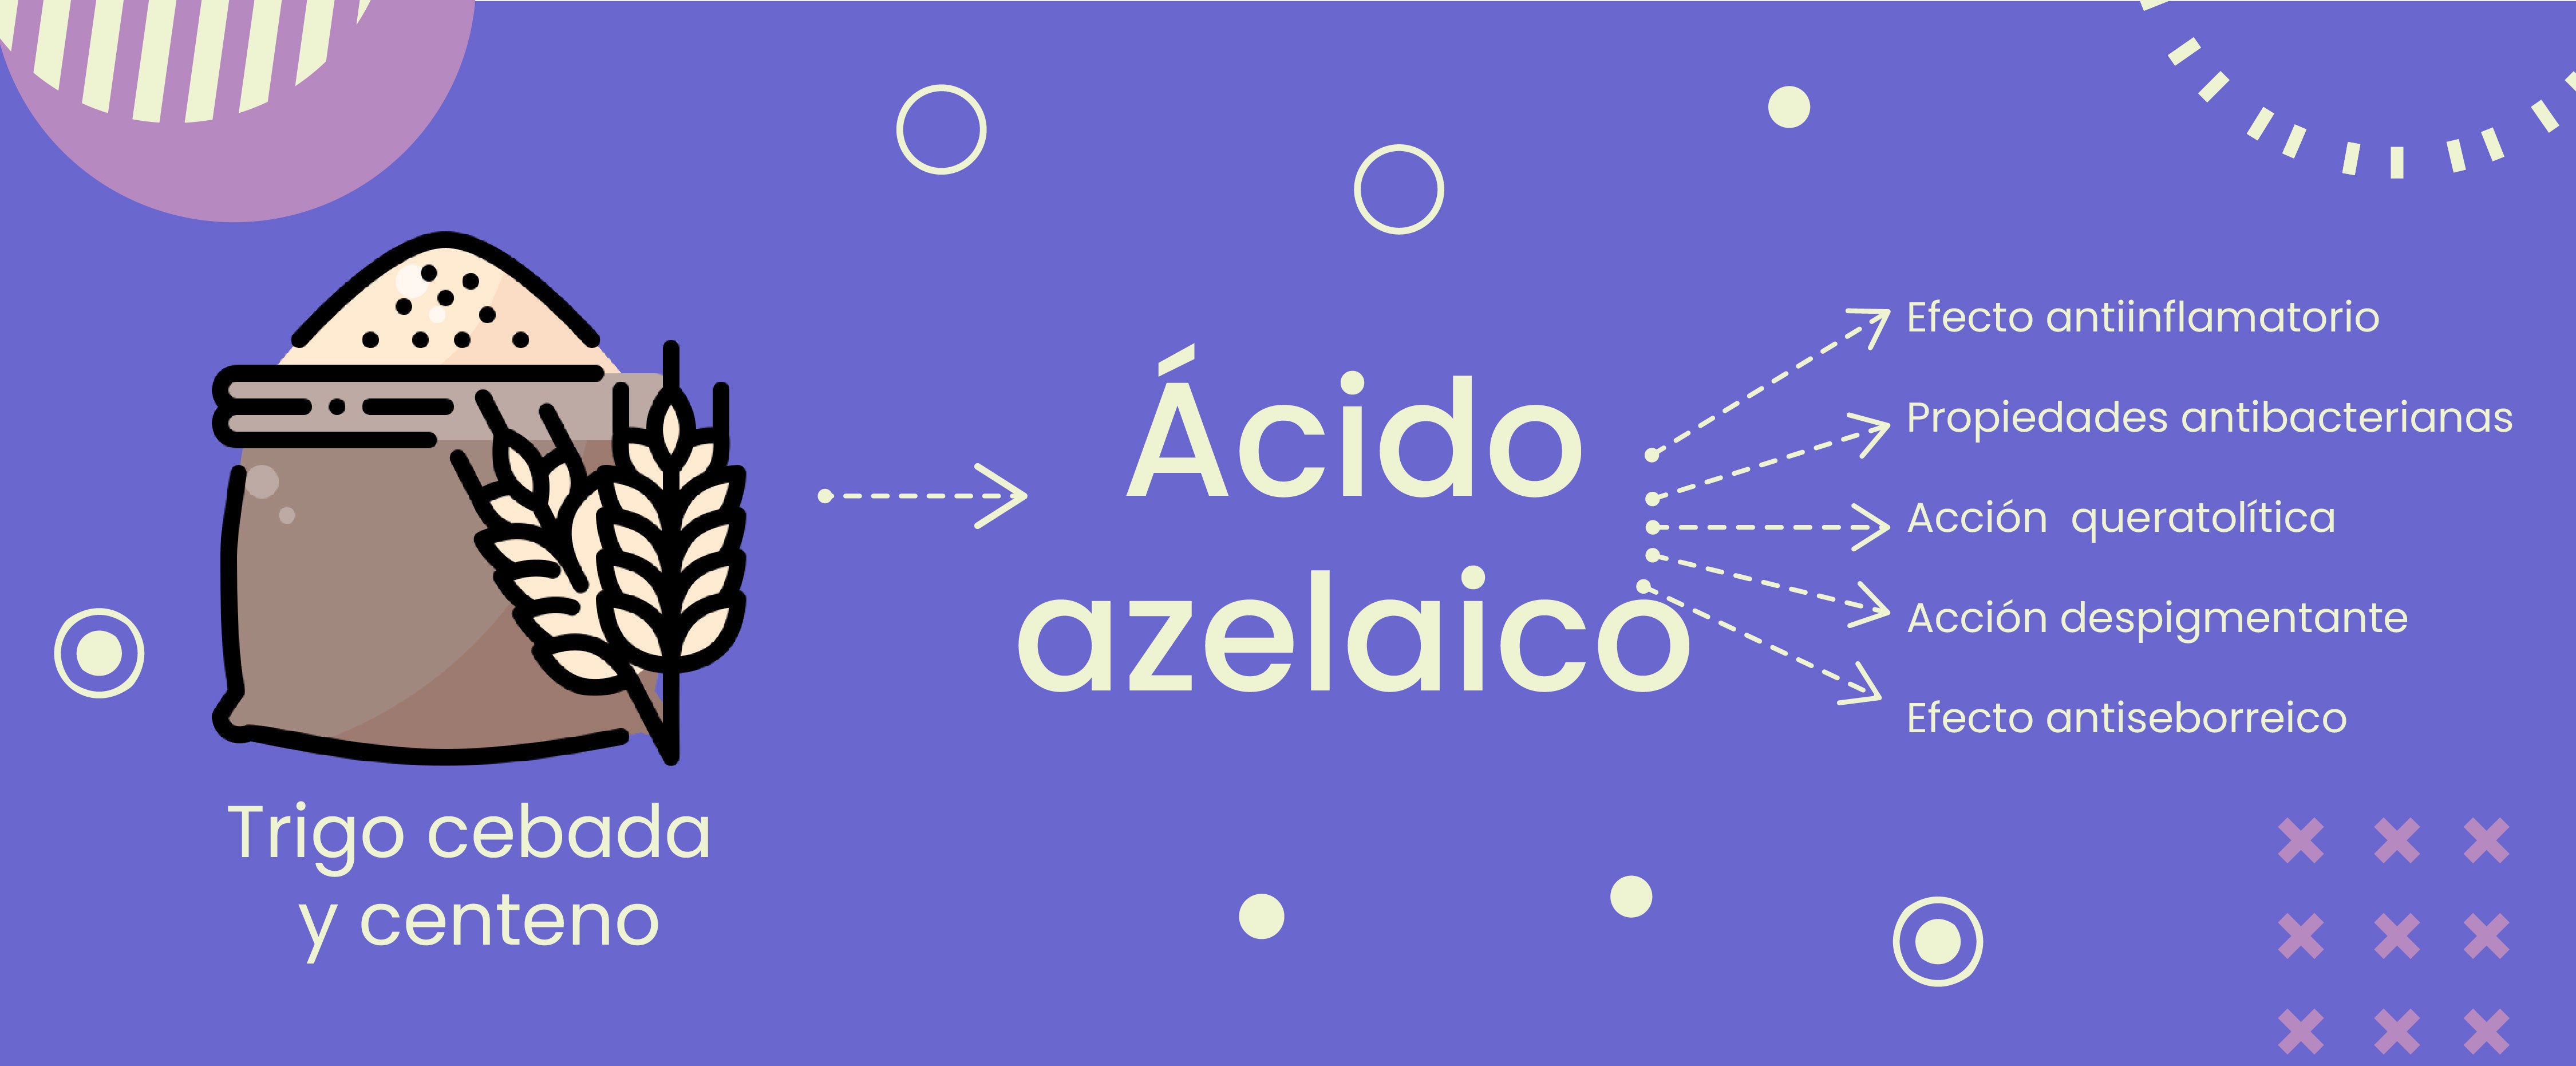 Propiedades del ácido azelaico (antiinflamatorio, antibacterianas, queratolíticas, despigmentante, antiseborreico). 